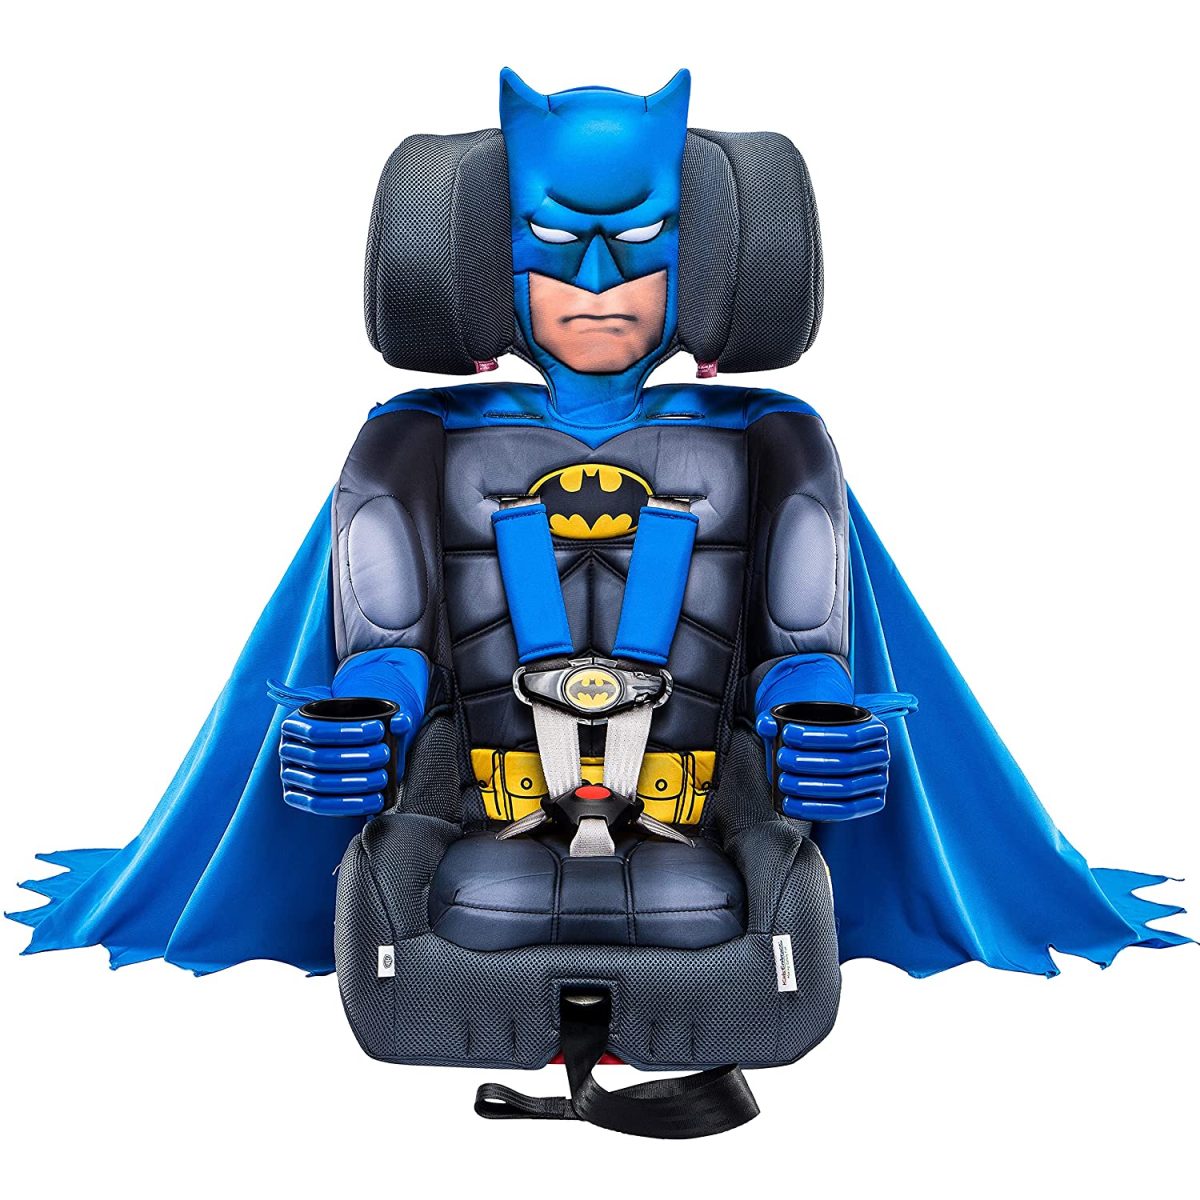 2-in-1 Batman Booster Car Seat